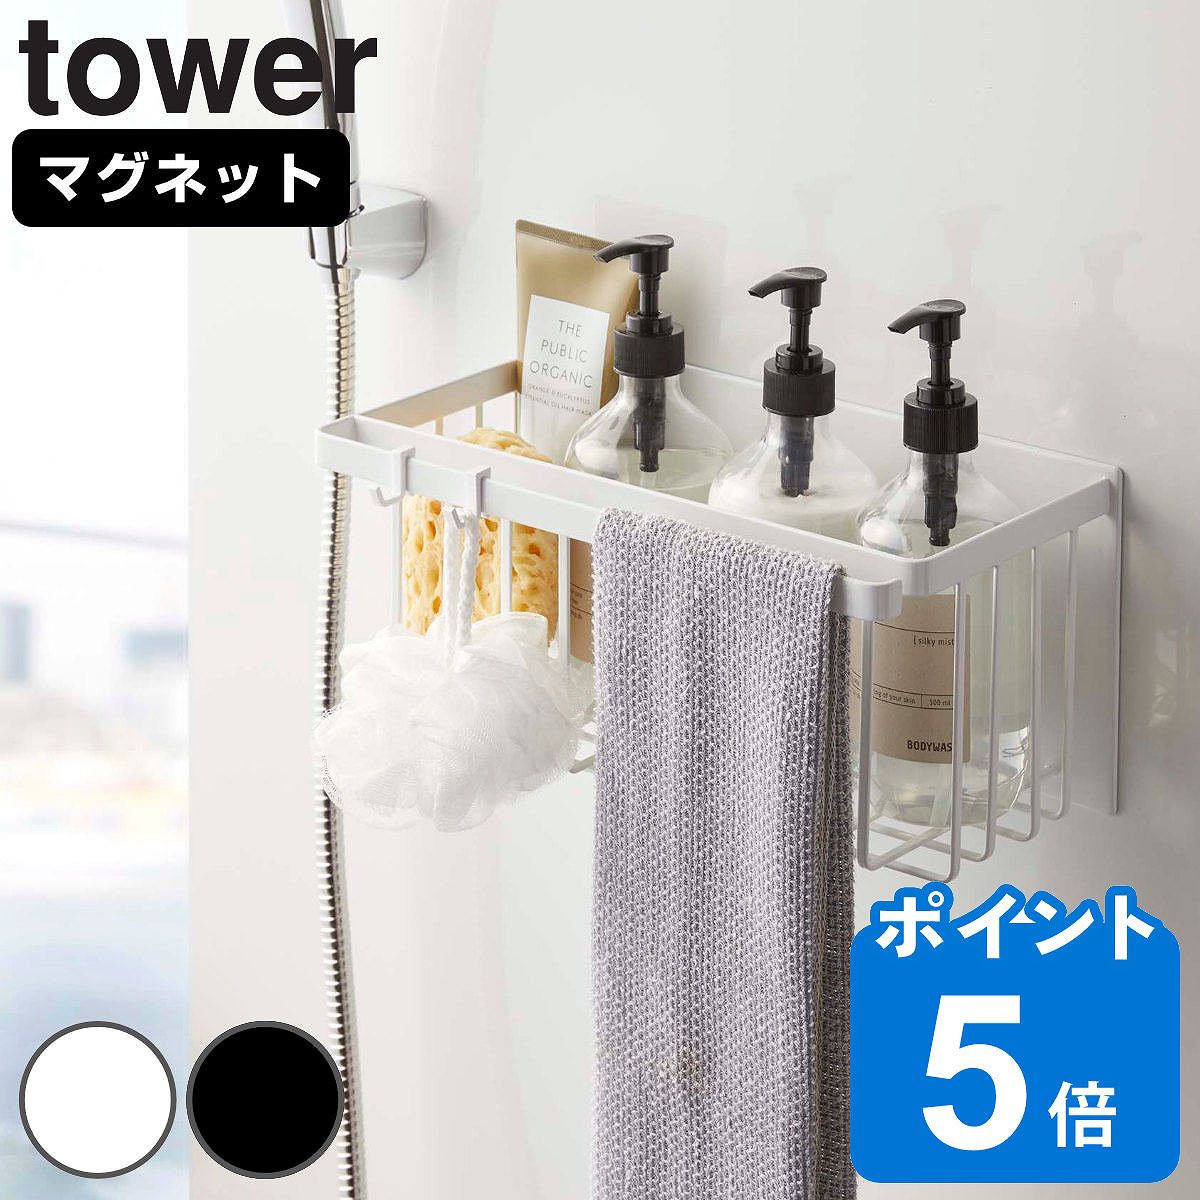 山崎実業 tower マグネットバスルームバスケット タワー